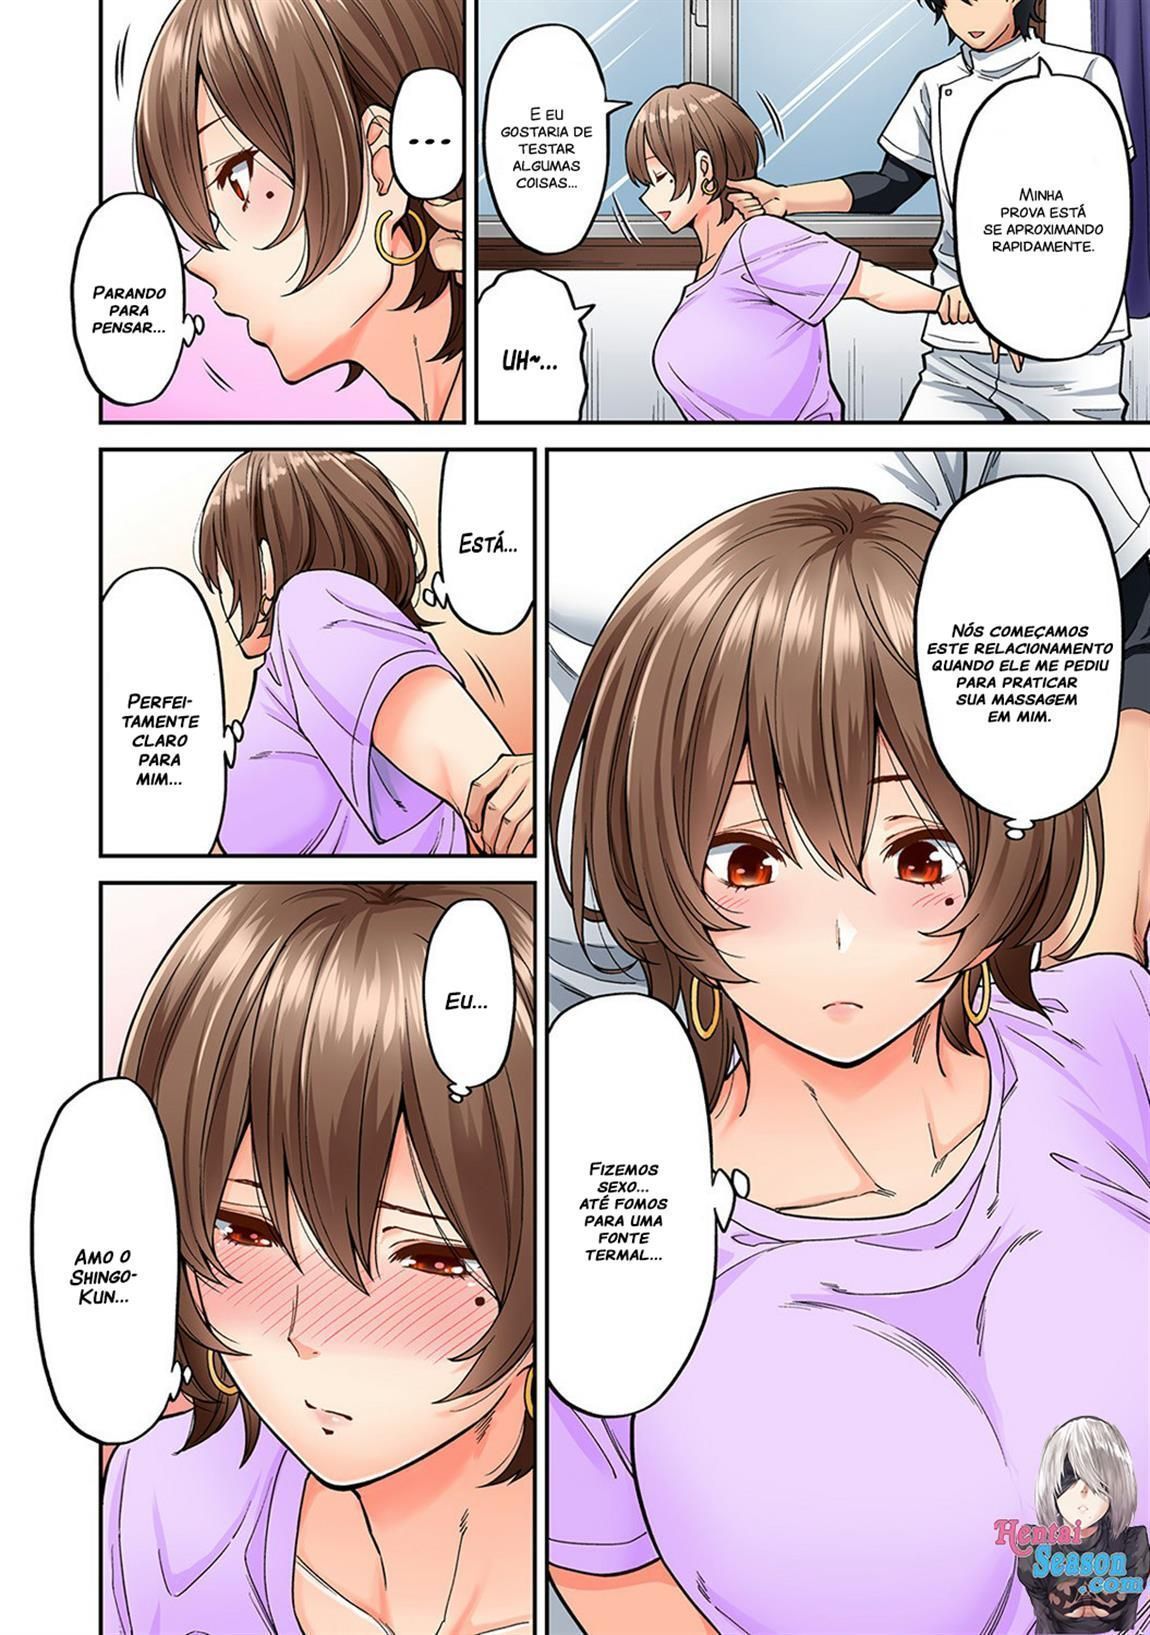 Sakura hentai foi fazer massagem na vizinha e meteu pica